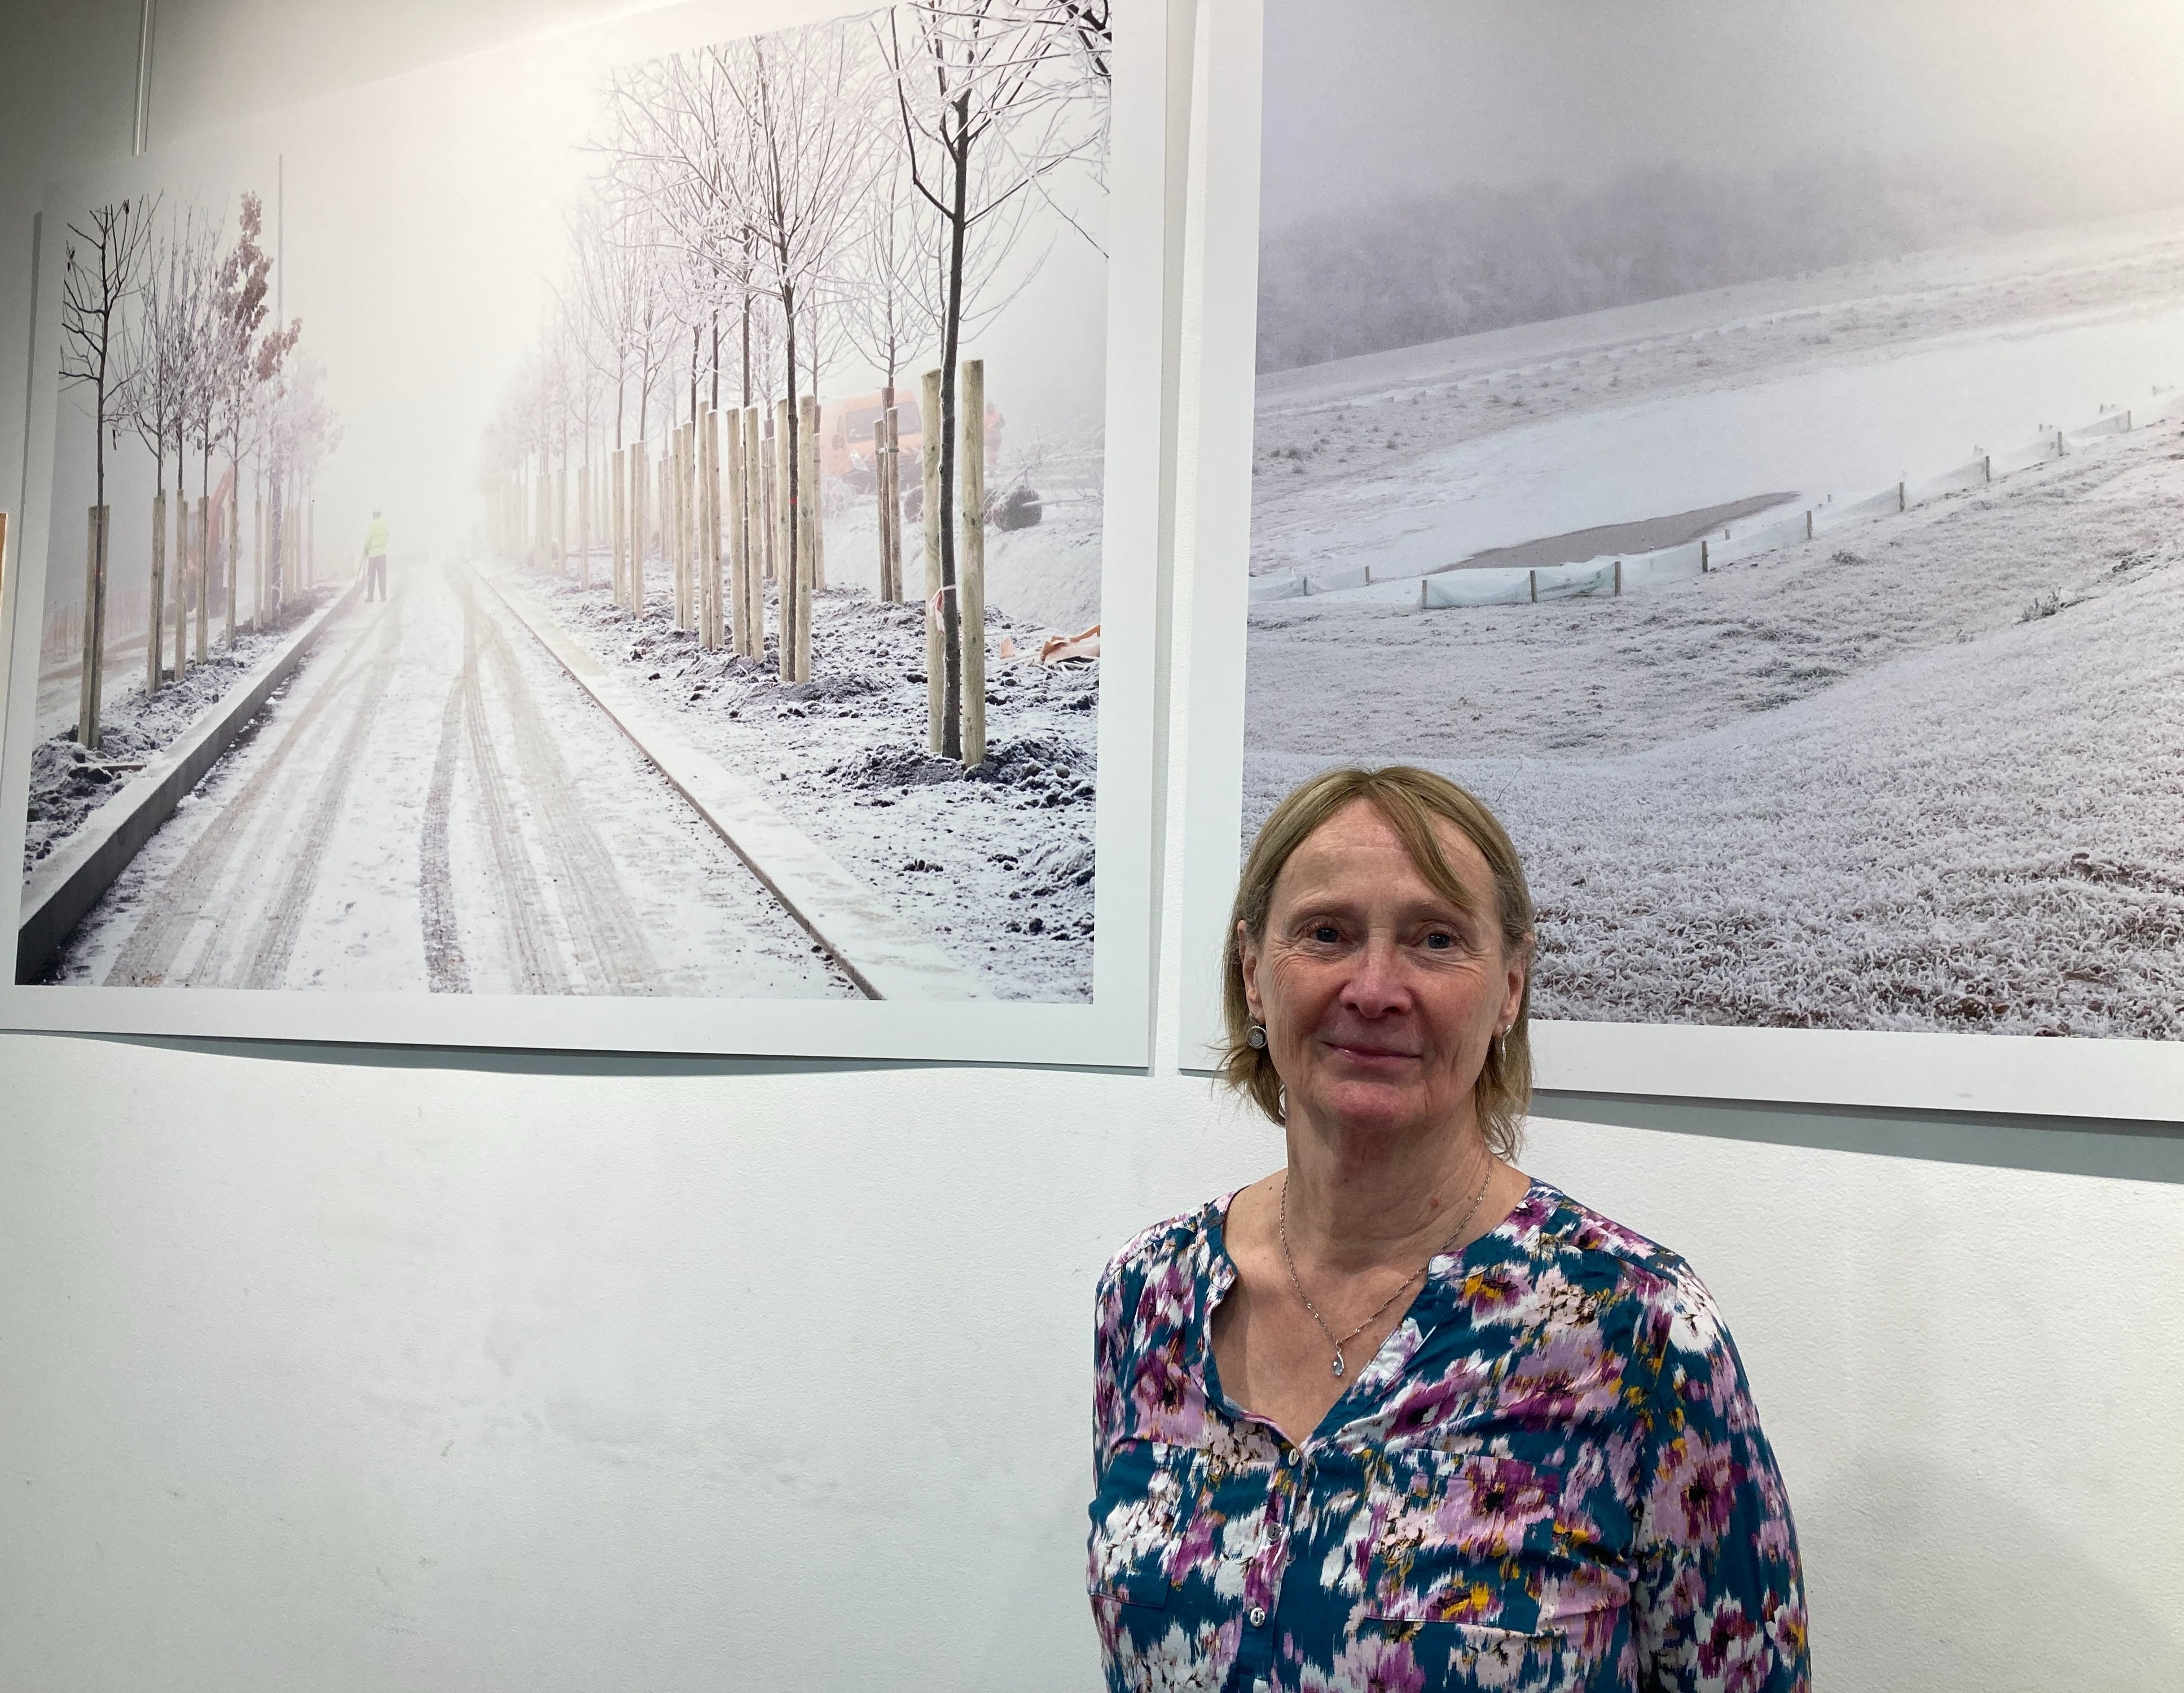 Palaiseau, samedi 14 janvier 2023. Yolande Potier, photographe amateur, expose sa collection "Brouillard givrant" à la MJC locale jusqu'au 29 janvier. LP/B.S.